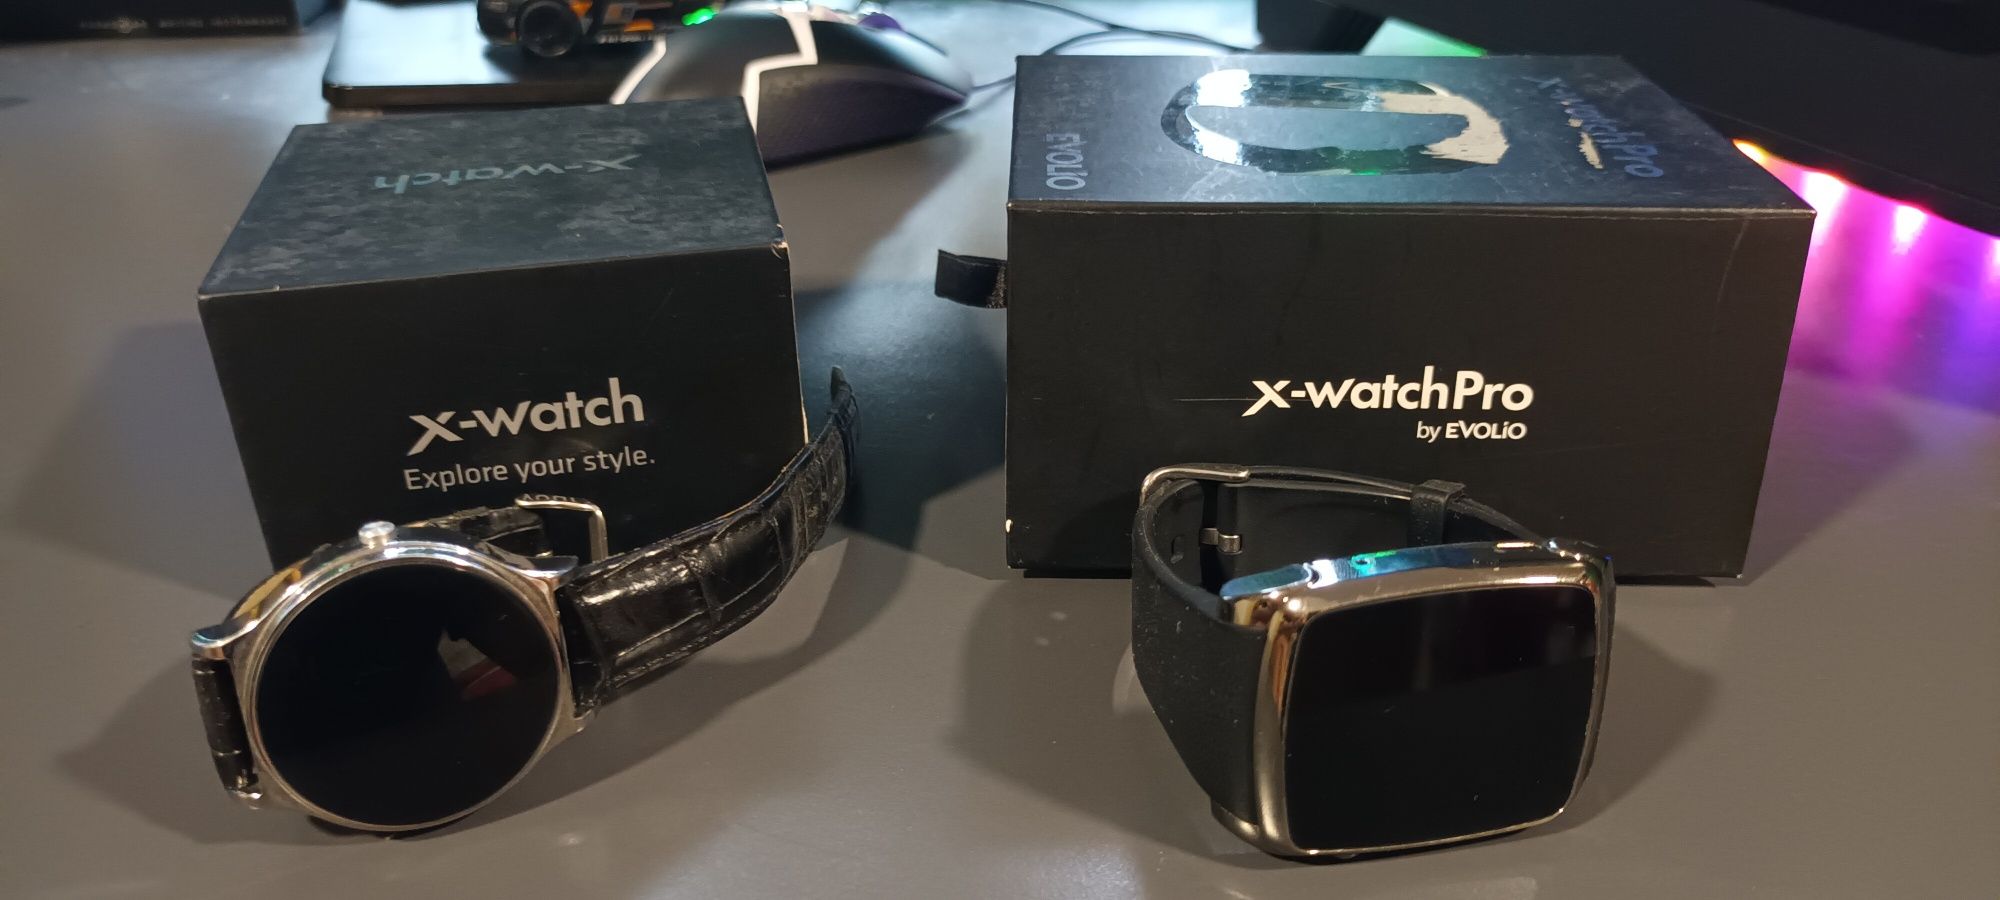 Vand ceasuri X watch si Xwatch pro